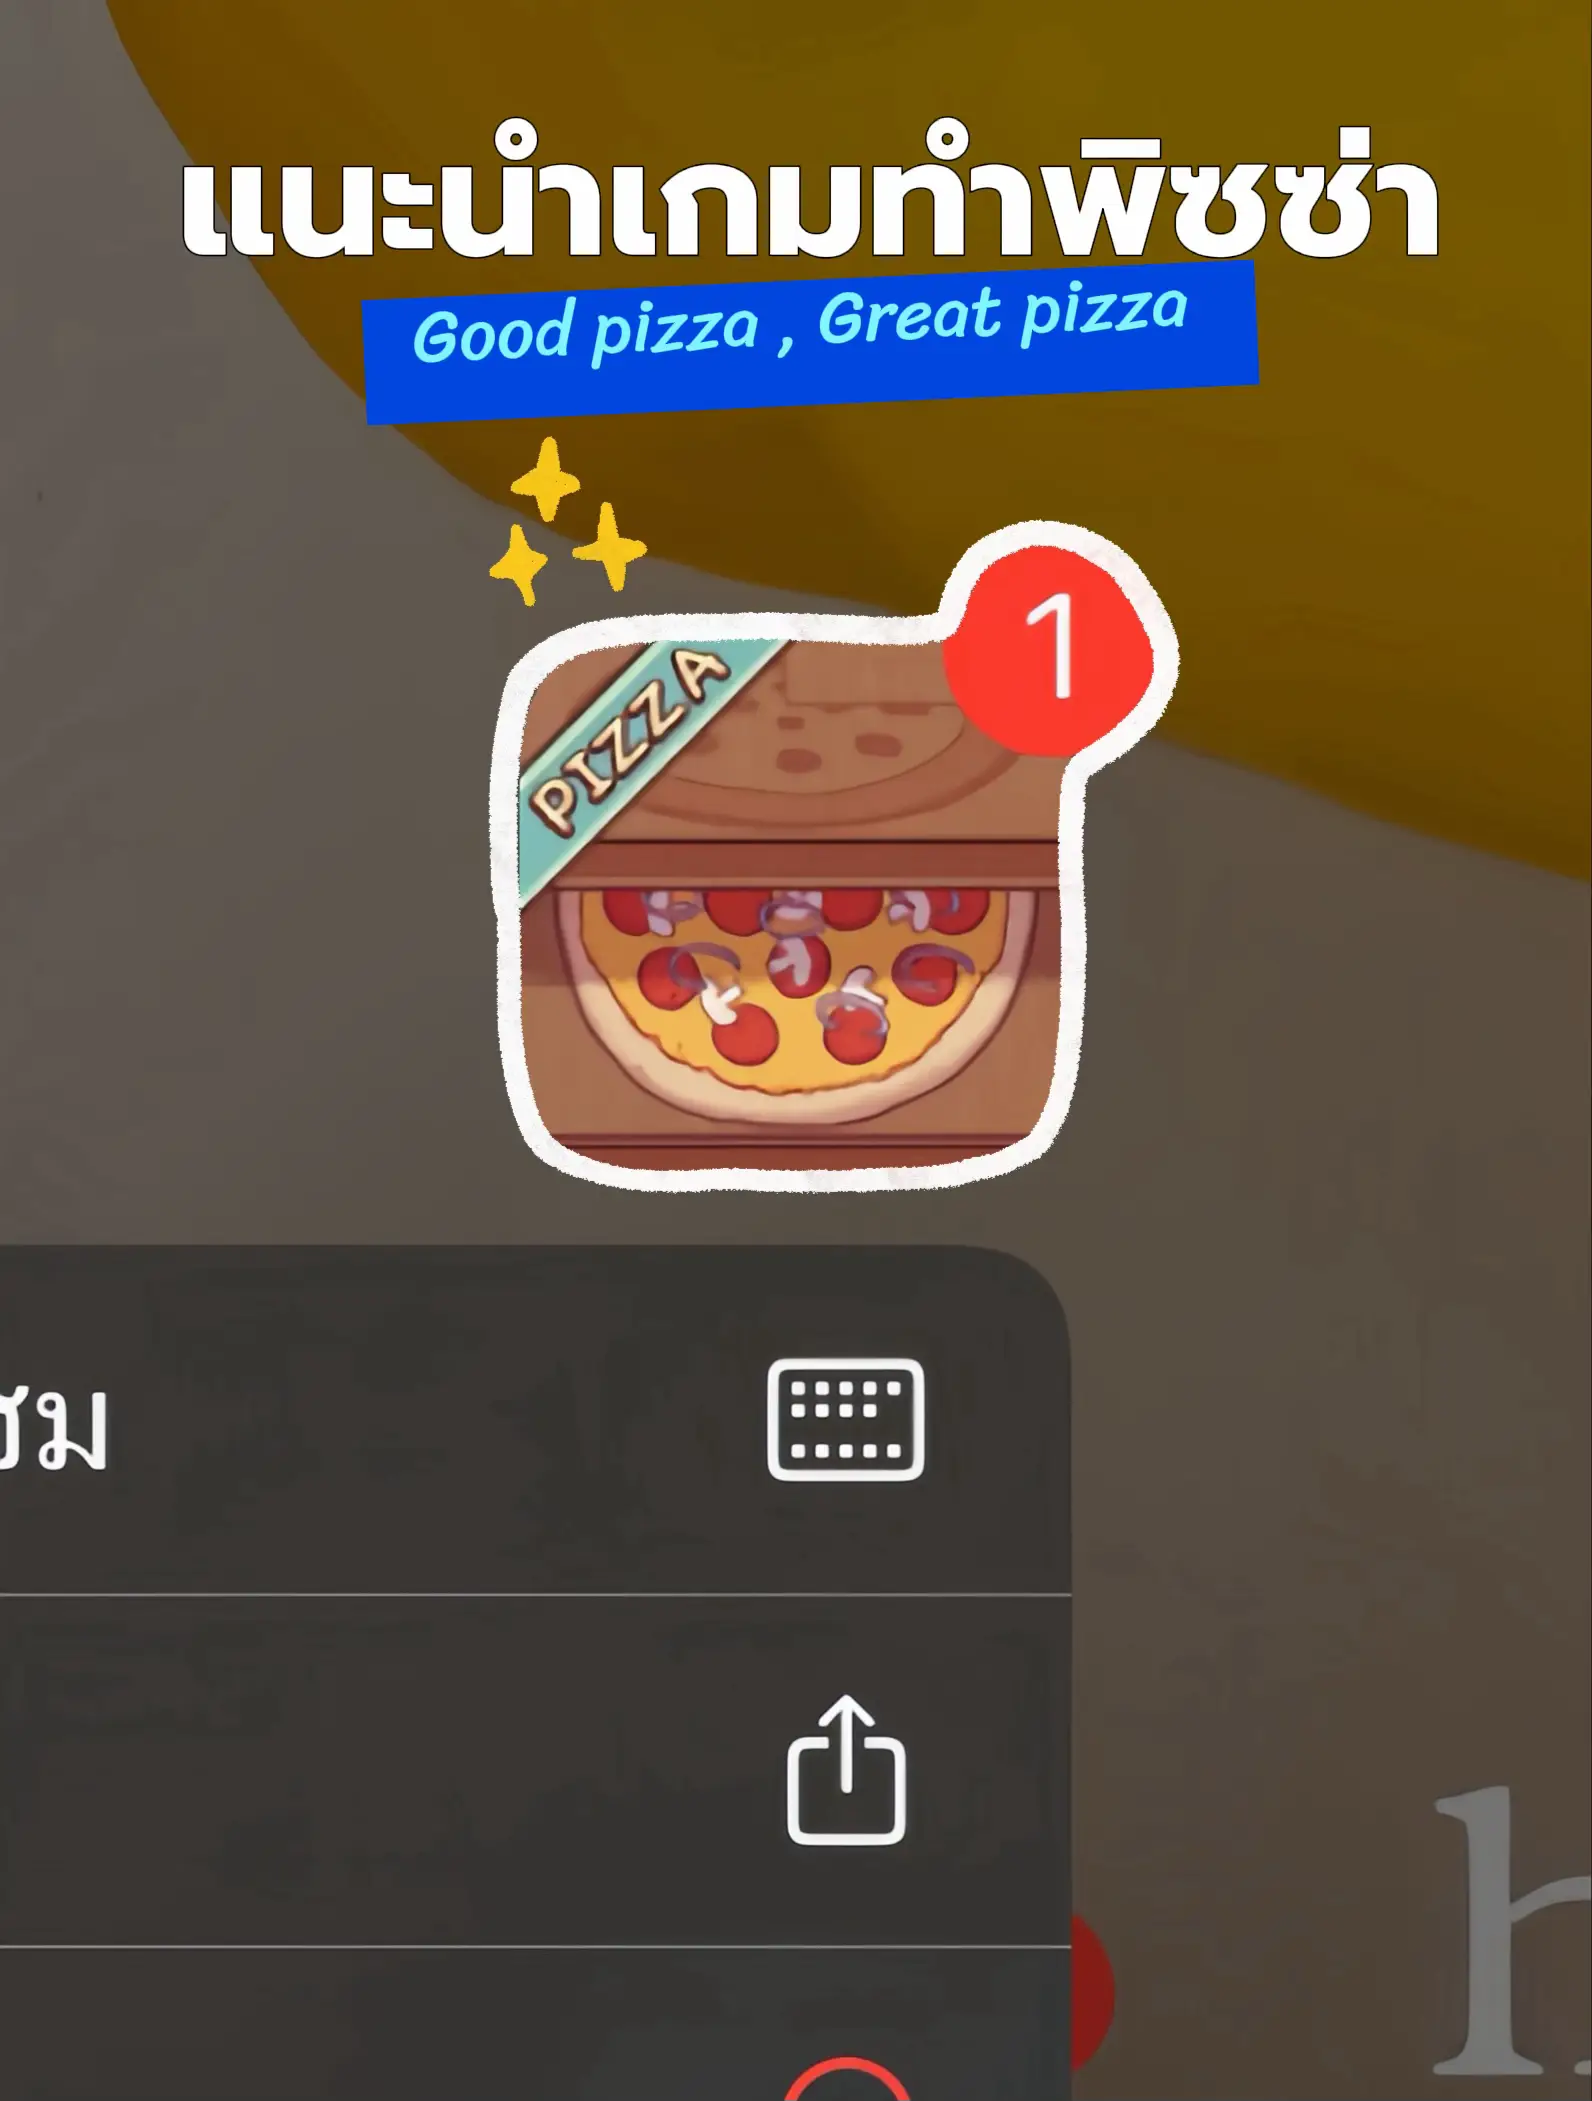 PIZZA MAKING jogo online gratuito em